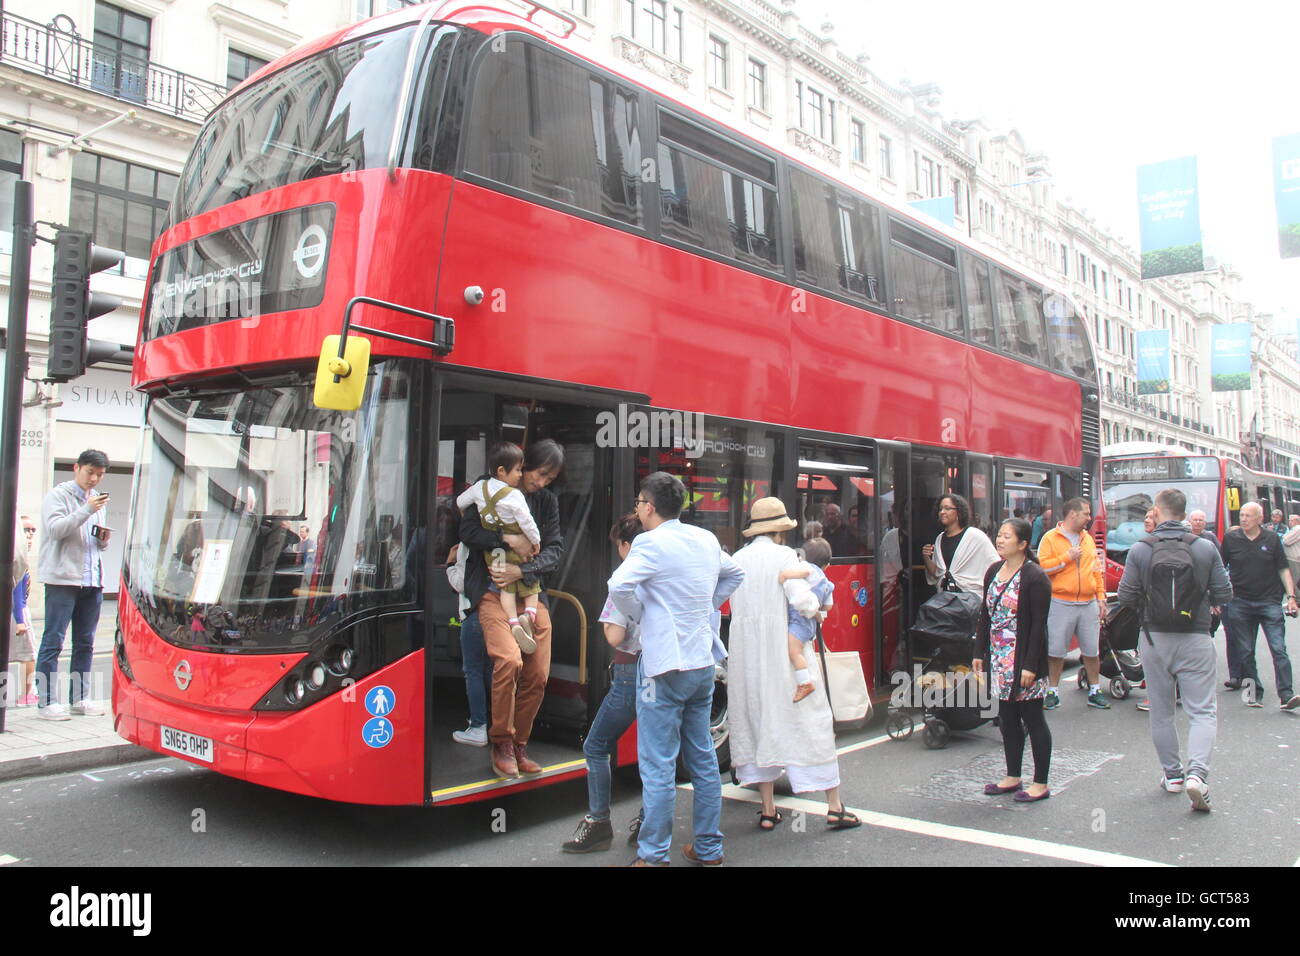 ALEXANDER DENNIS ENVIRO 400 H TRANSPORTIERT ROT LONDON BUS BEIFAHRERSEITE LANDSCHAFT BLICK AUF DIE STADT AM DESIGN FESTIVAL IN LONDON Stockfoto